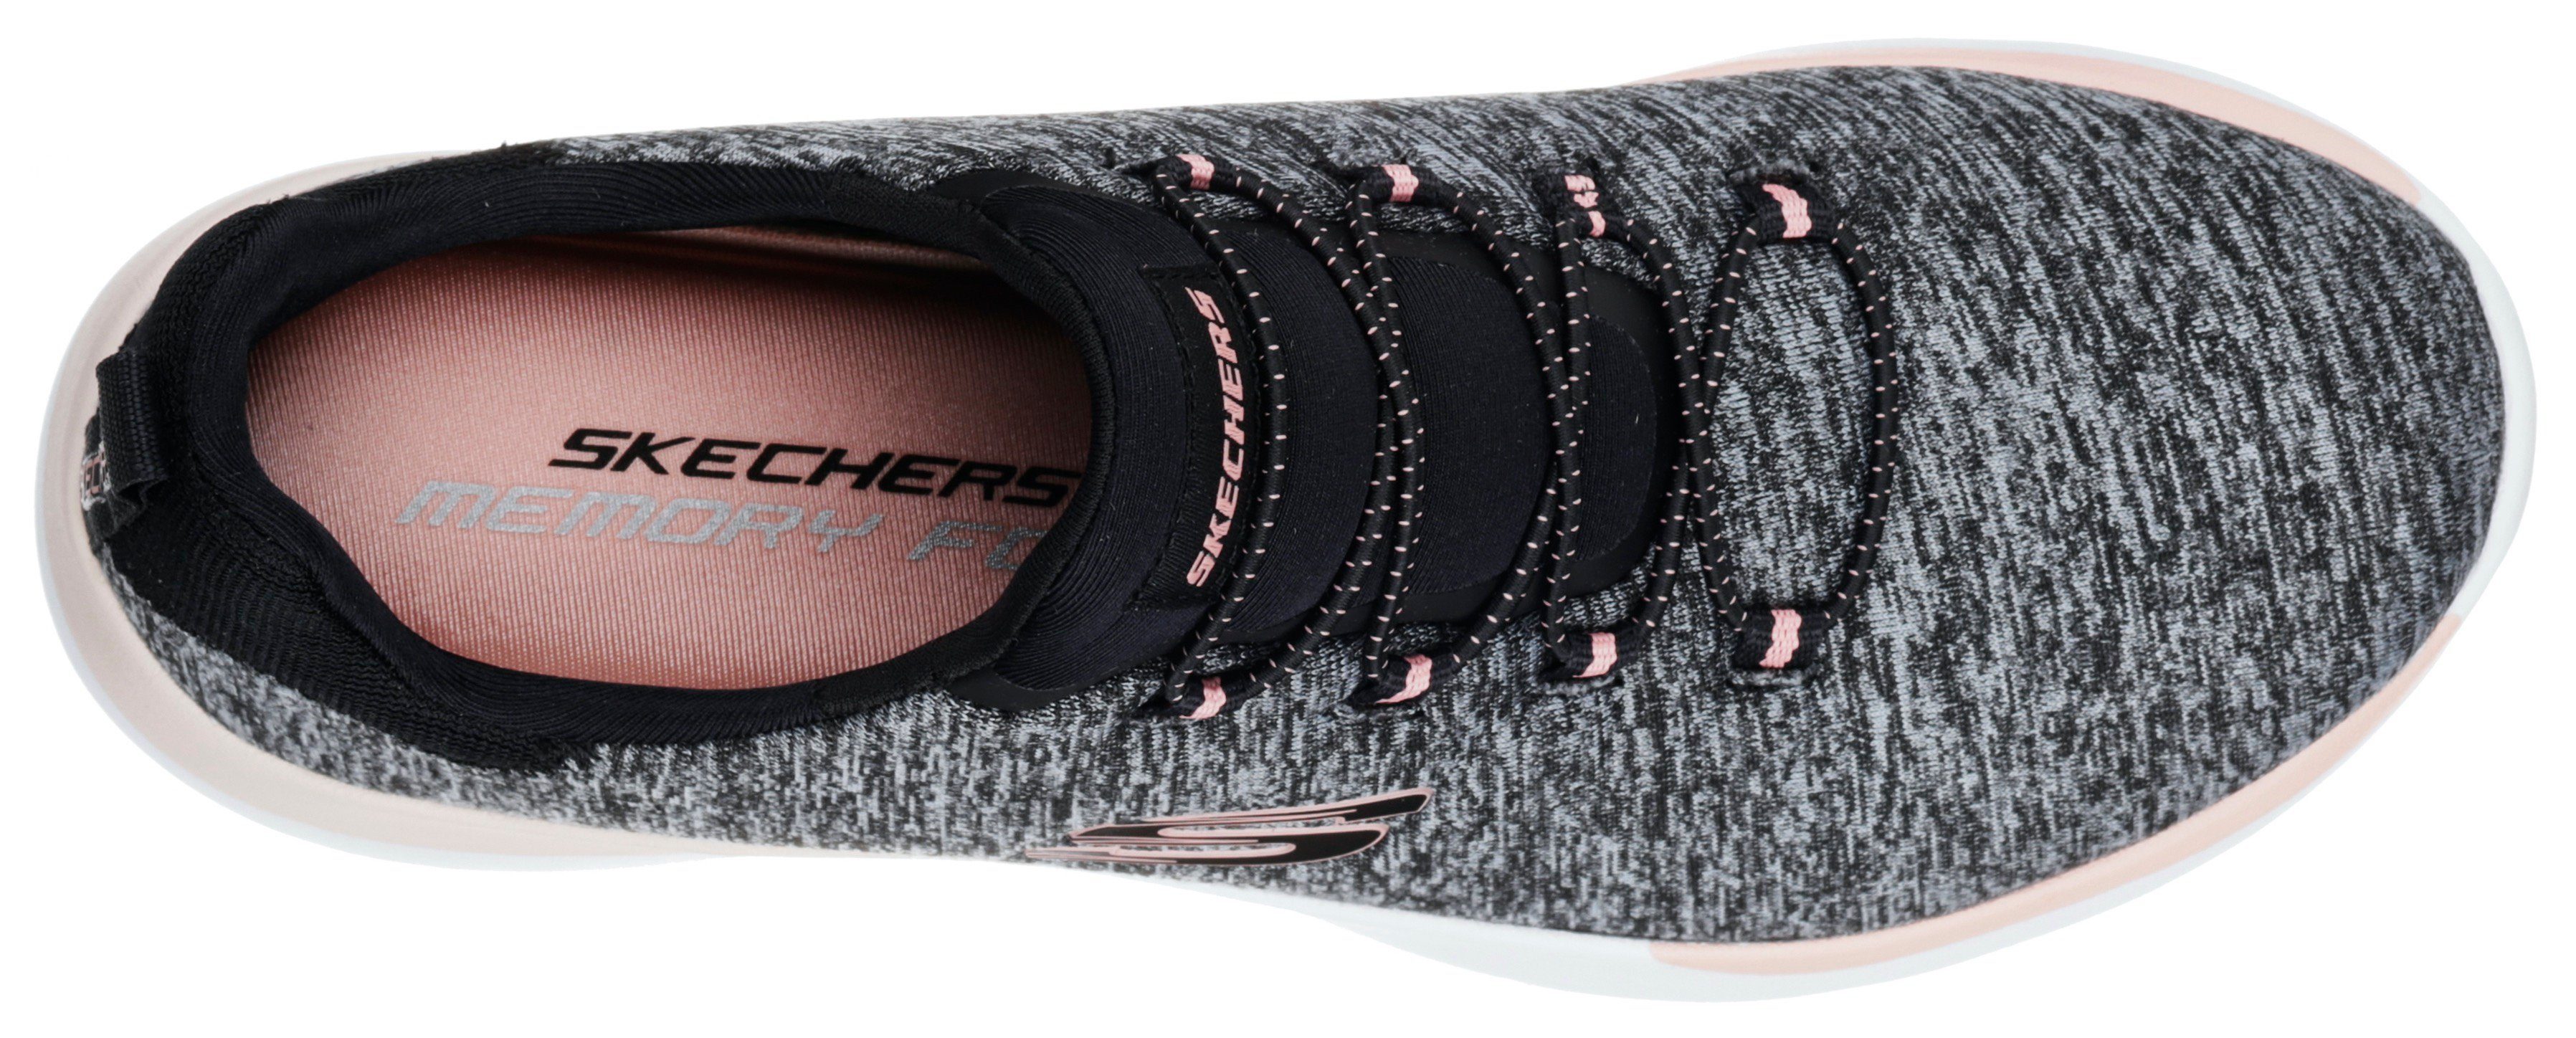 mit DYNAMIGHT-BREAK-THROUGH Skechers Slip-On schwarz-meliert Gummizug praktischem Sneaker